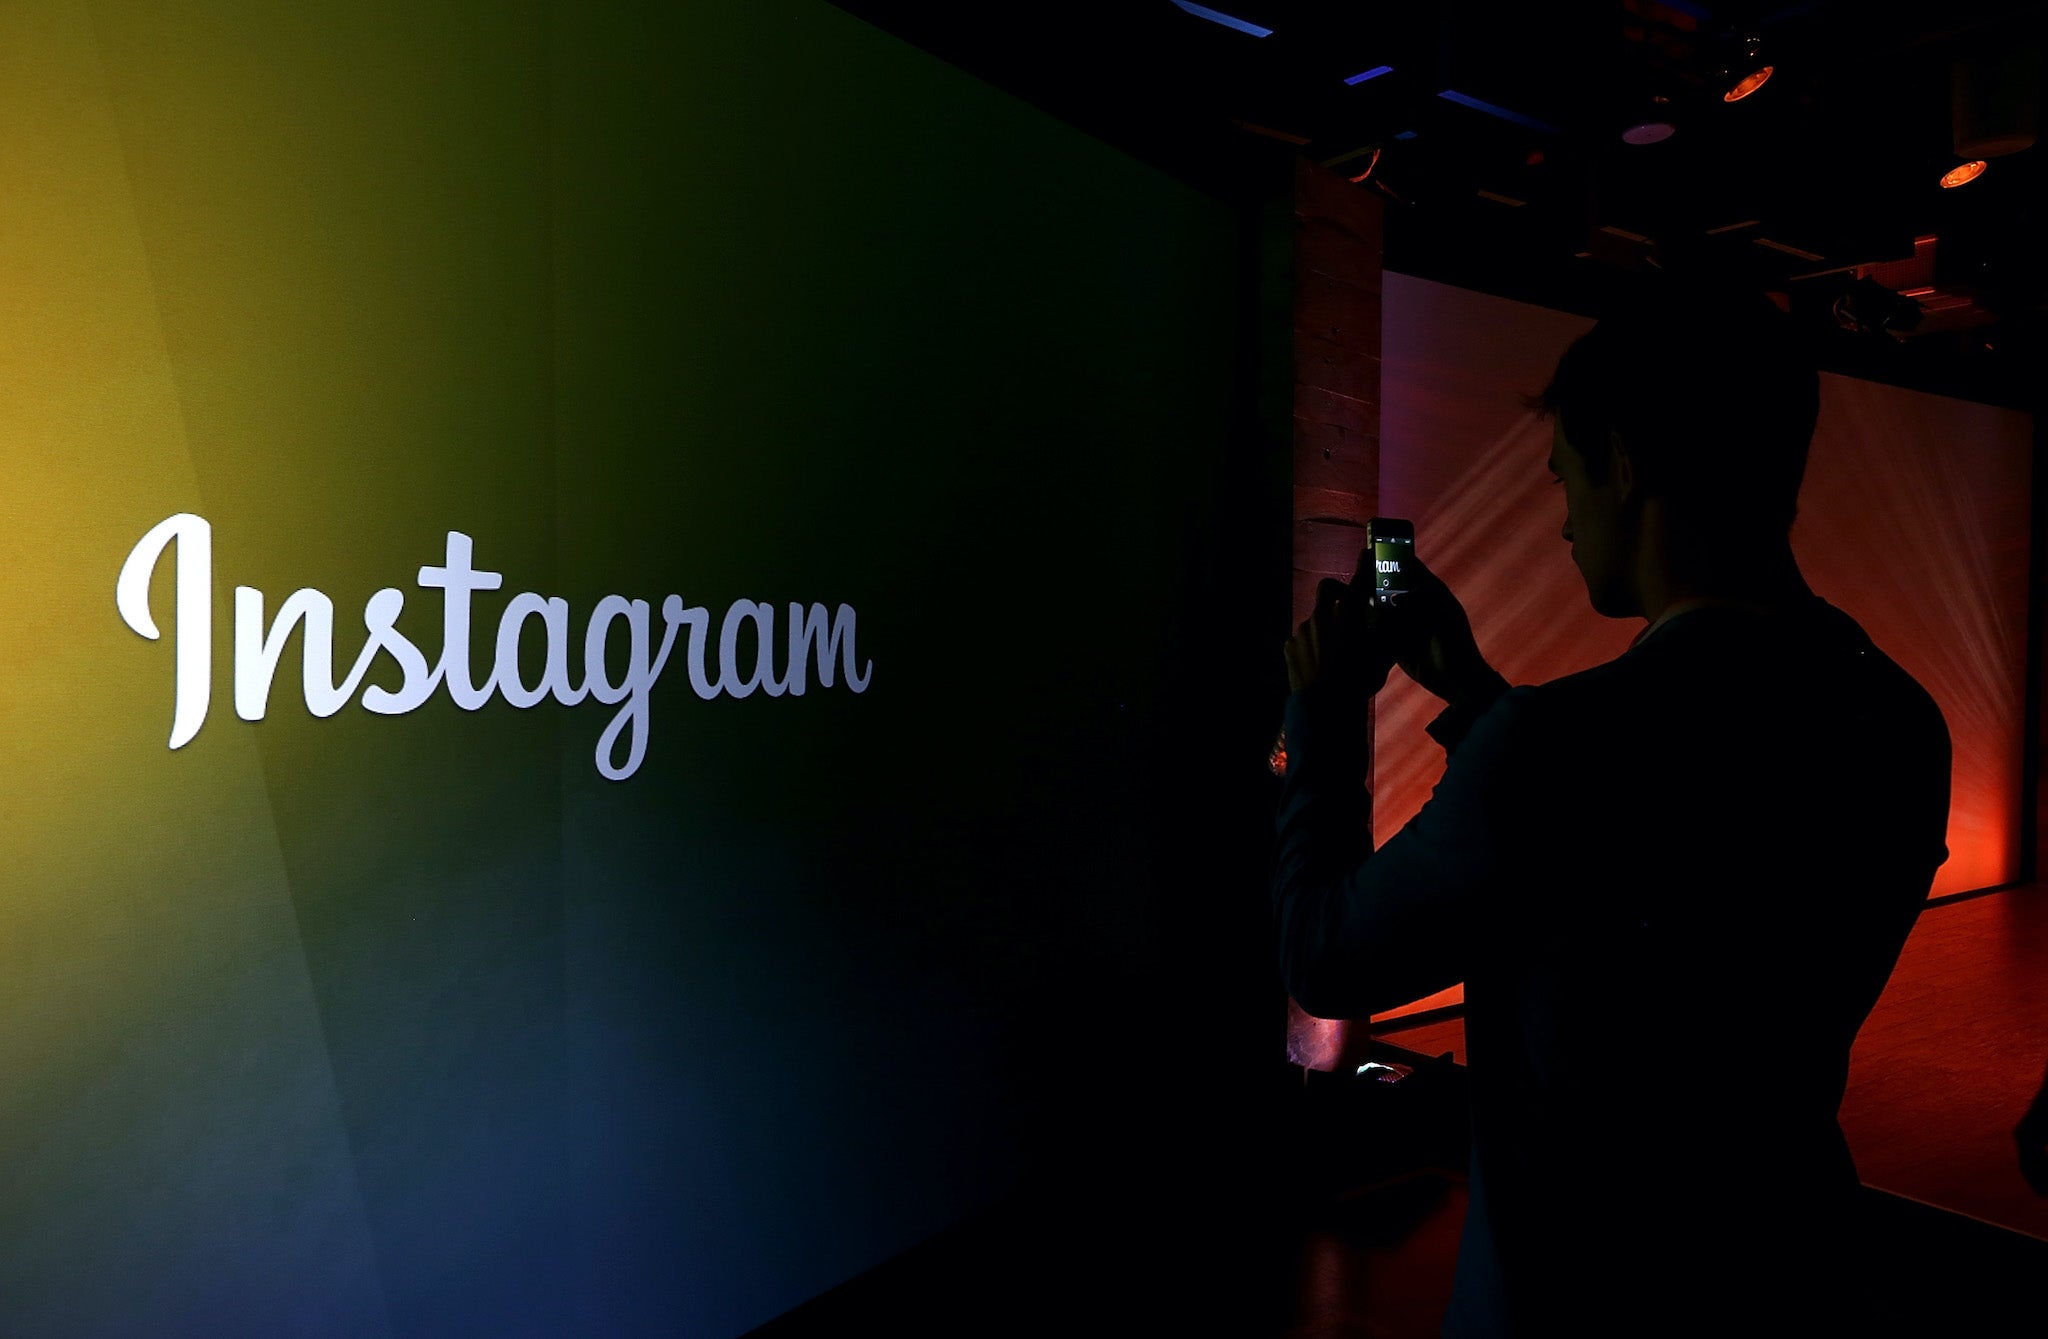 El cambio principal es la promoción de Reels, que Instagram introdujo como una forma de competir con TikTok a principios de este año.